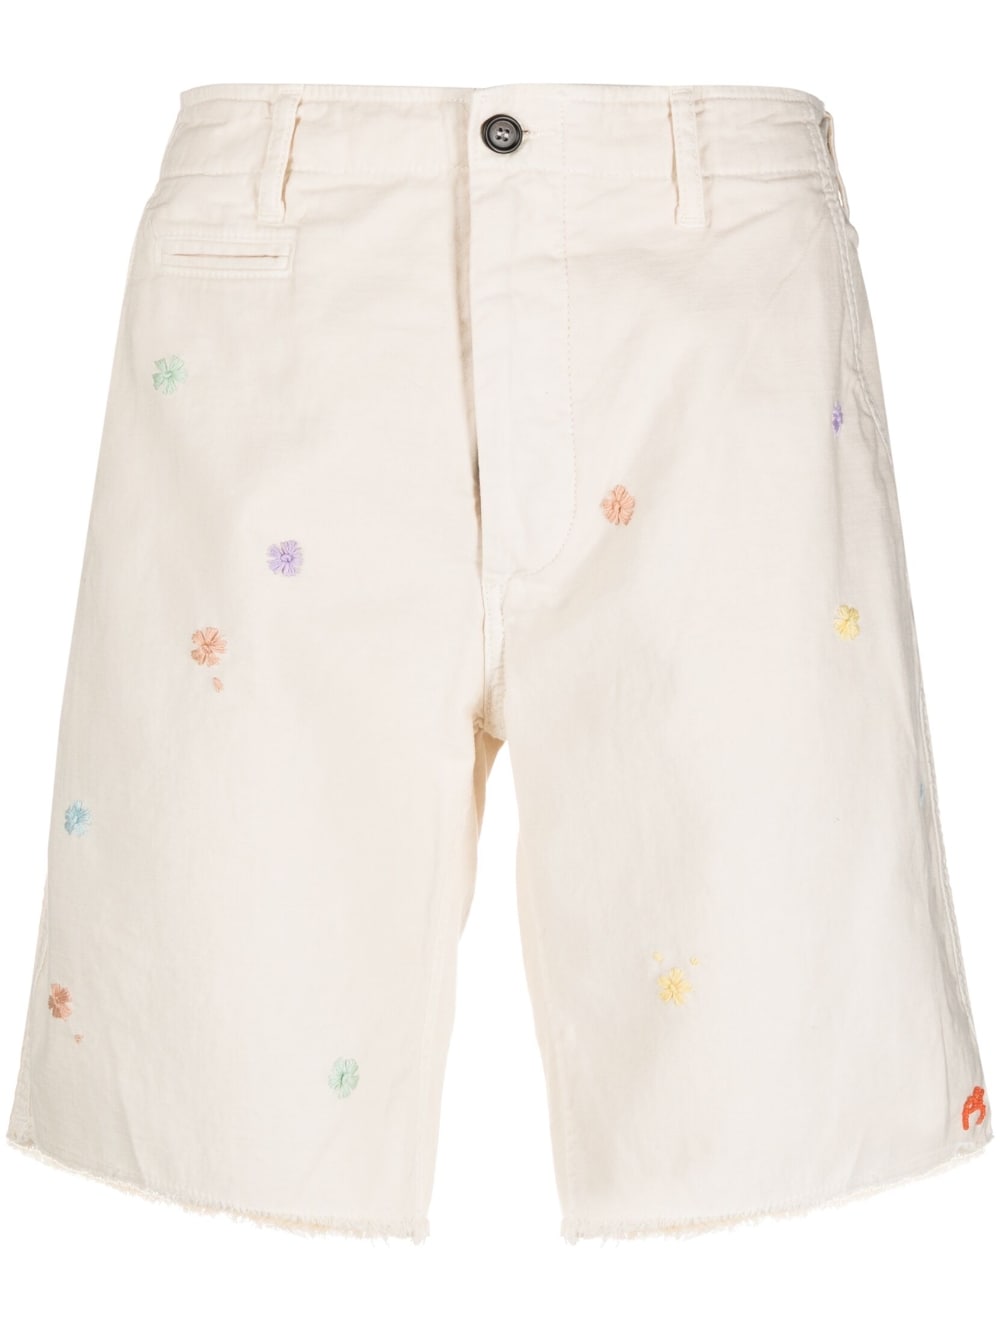 President's PRESIDENT'S- Flower Embroidered Shorts